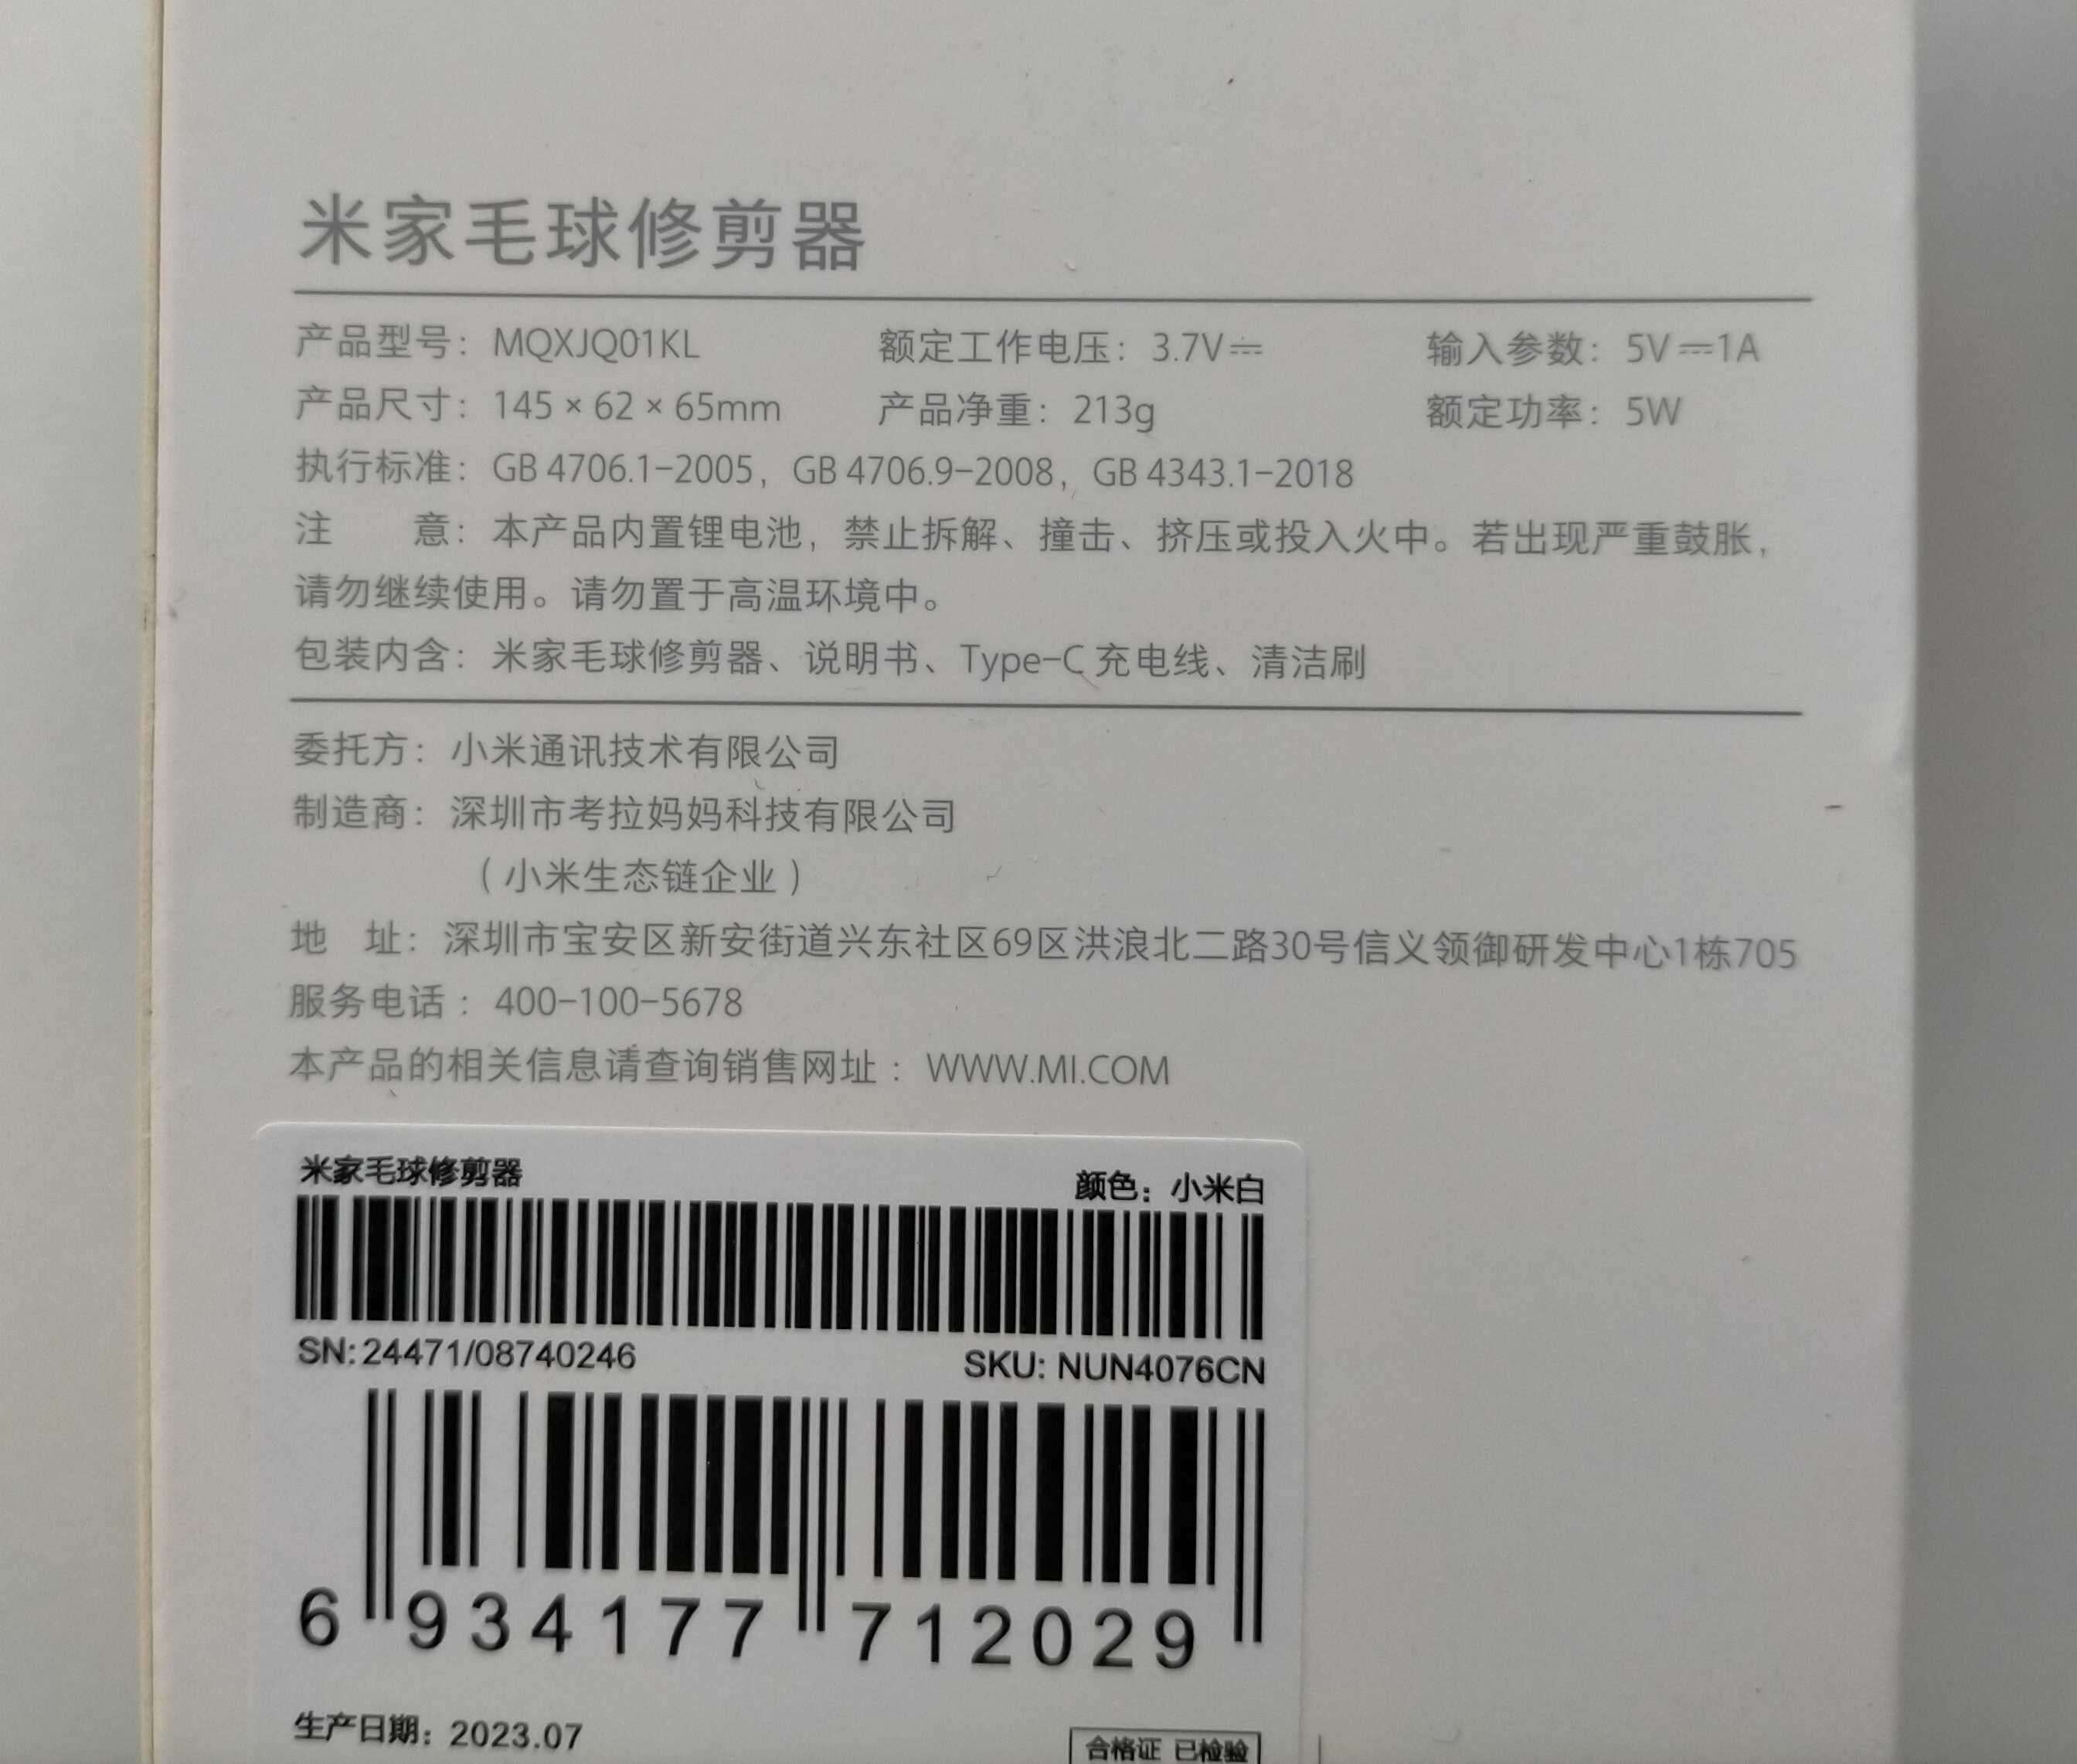 Xiaomi MIJIA Lint Remover машинка удаления катышков